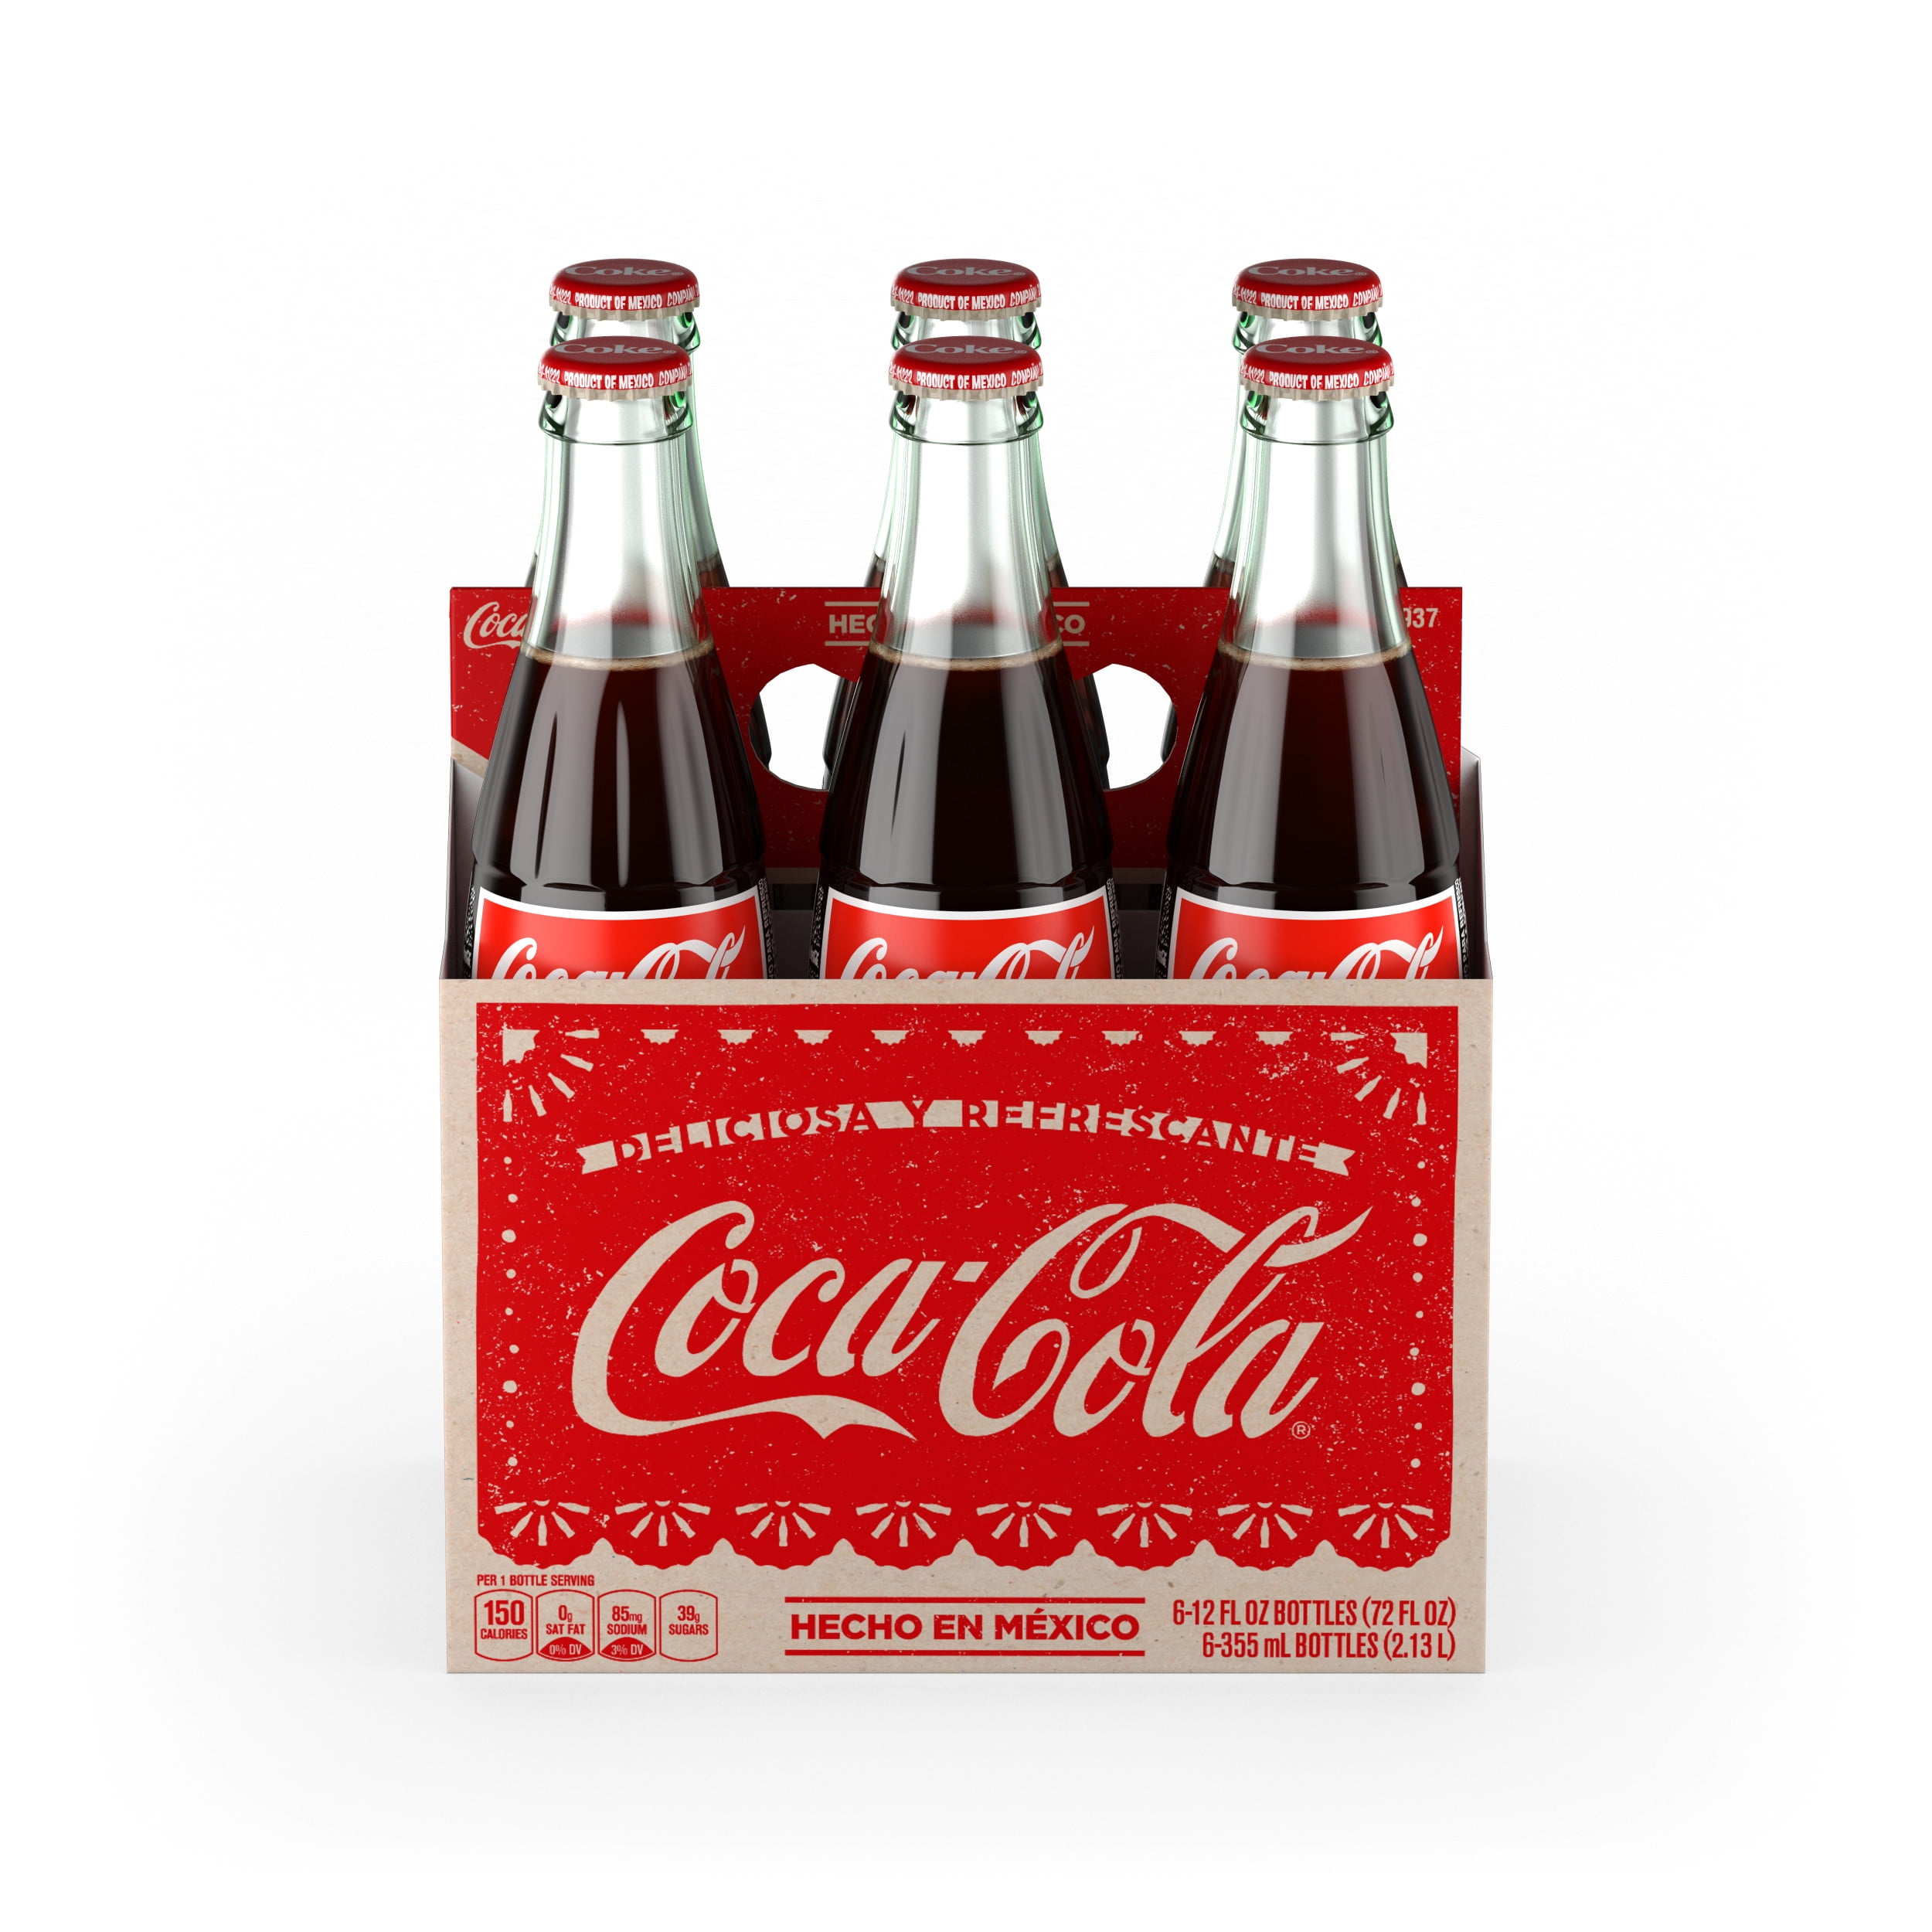 Refresco Coca-Cola Original 355ml 6 Pack